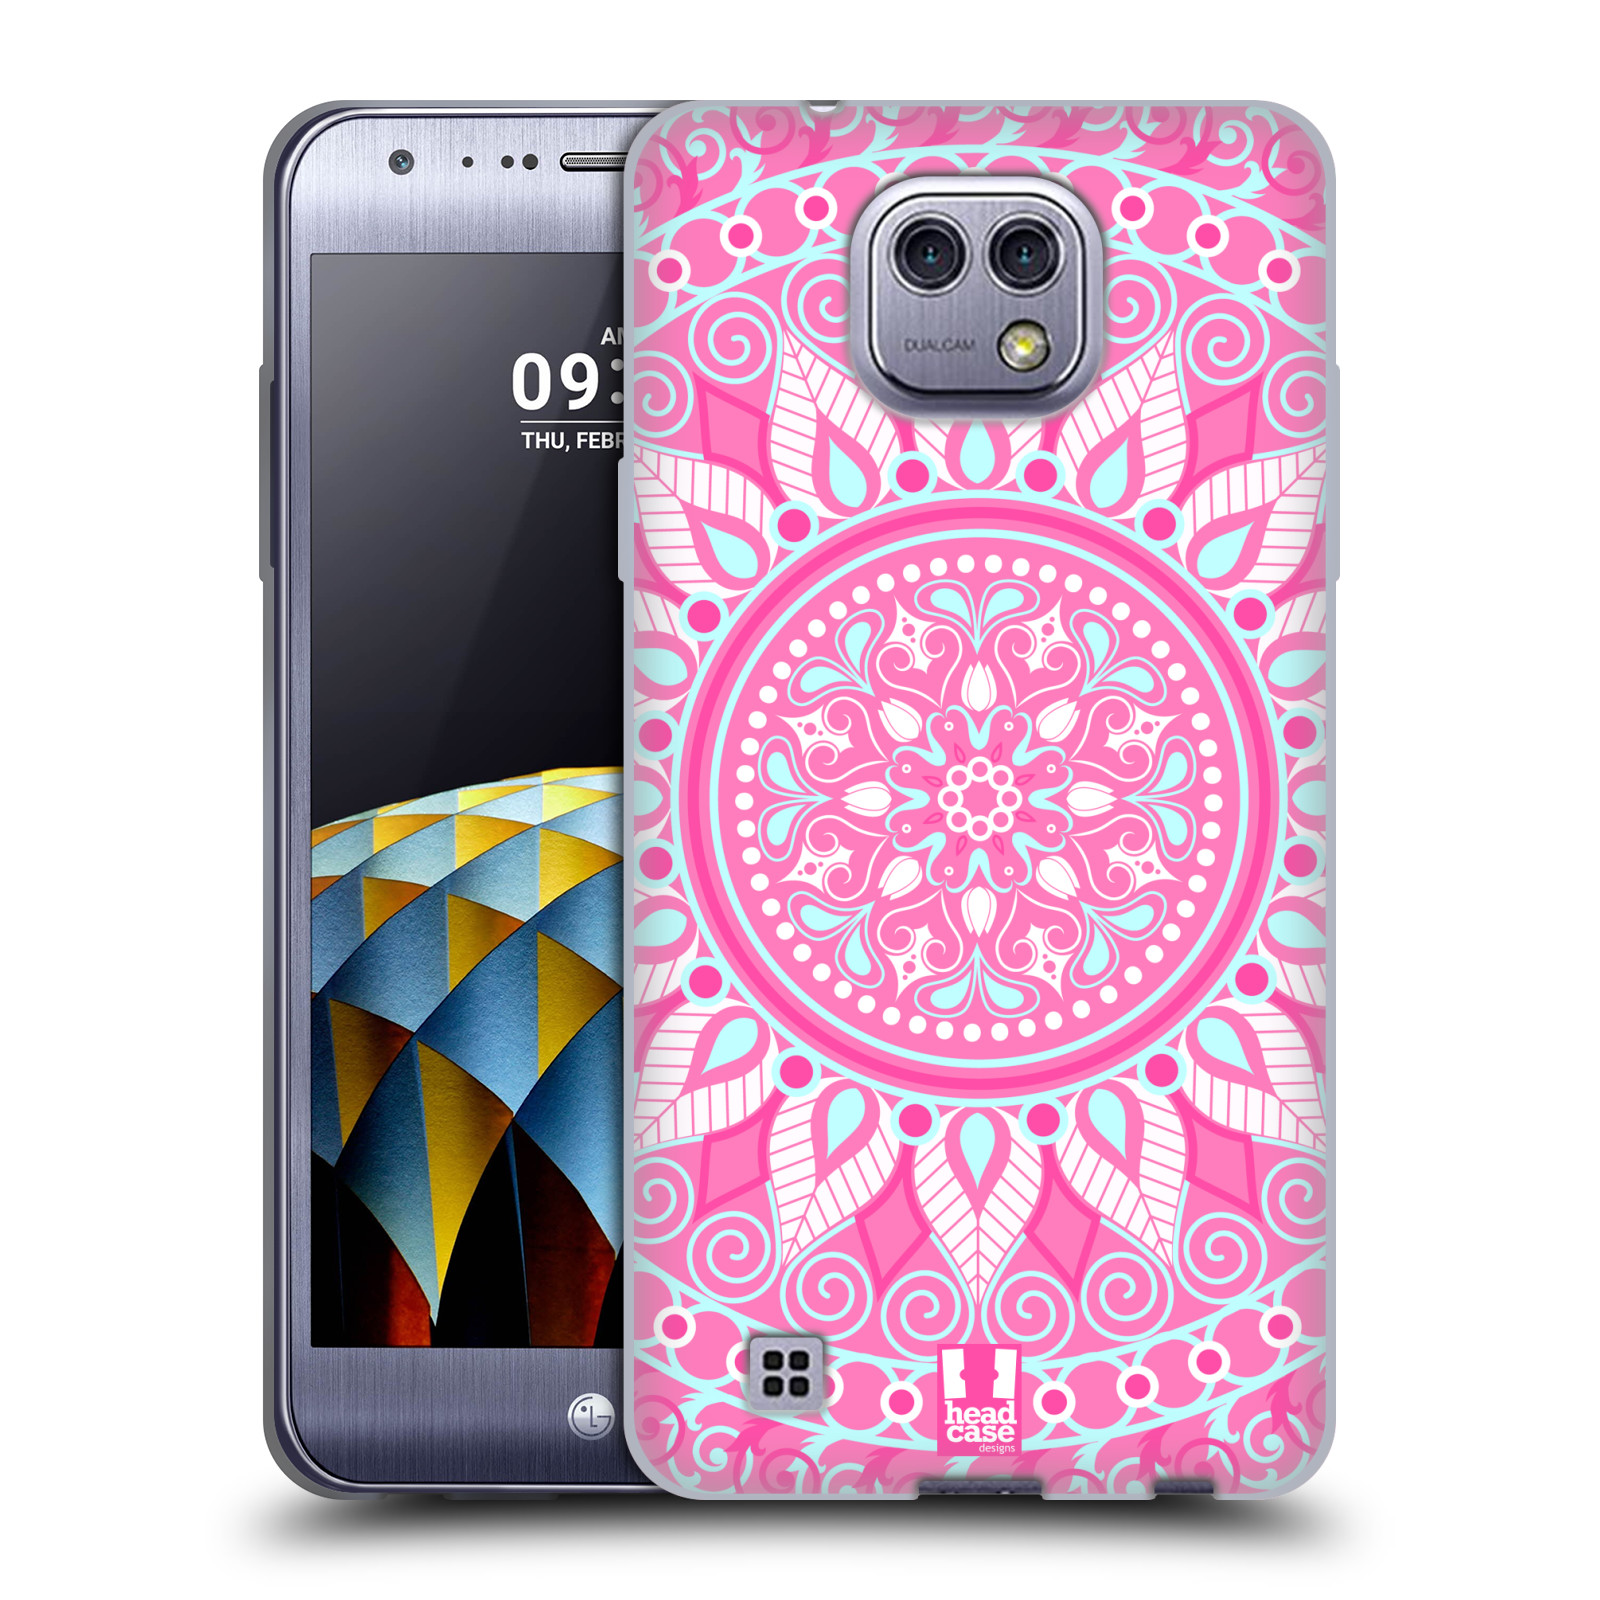 HEAD CASE silikonový obal na mobil LG X Cam vzor Indie Mandala slunce barevný motiv RŮŽOVÁ